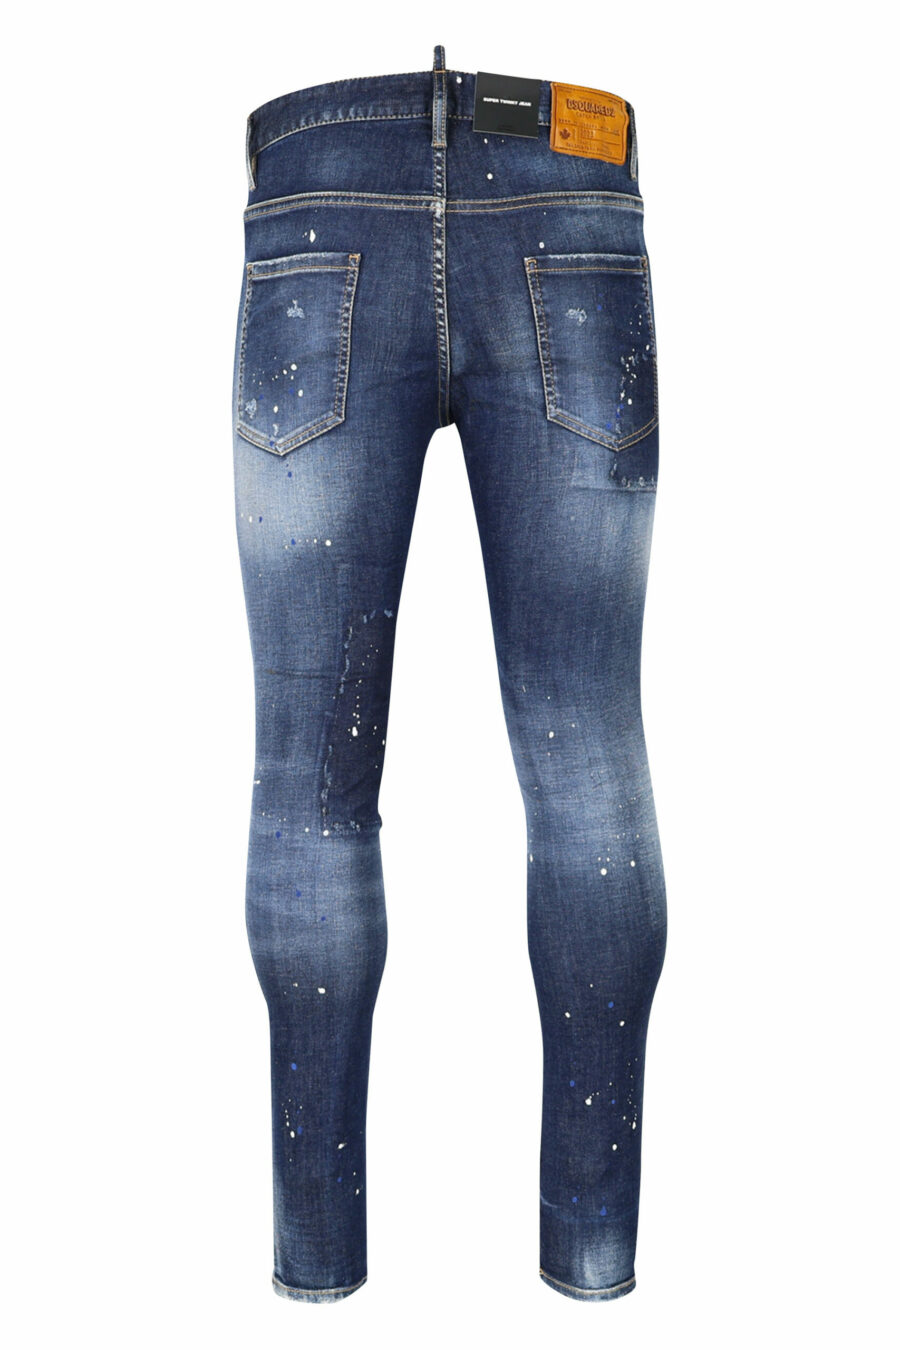 Blaue "super twinky jean" Jeans mit Patch und ausgefranst - 8054148104863 2 skaliert